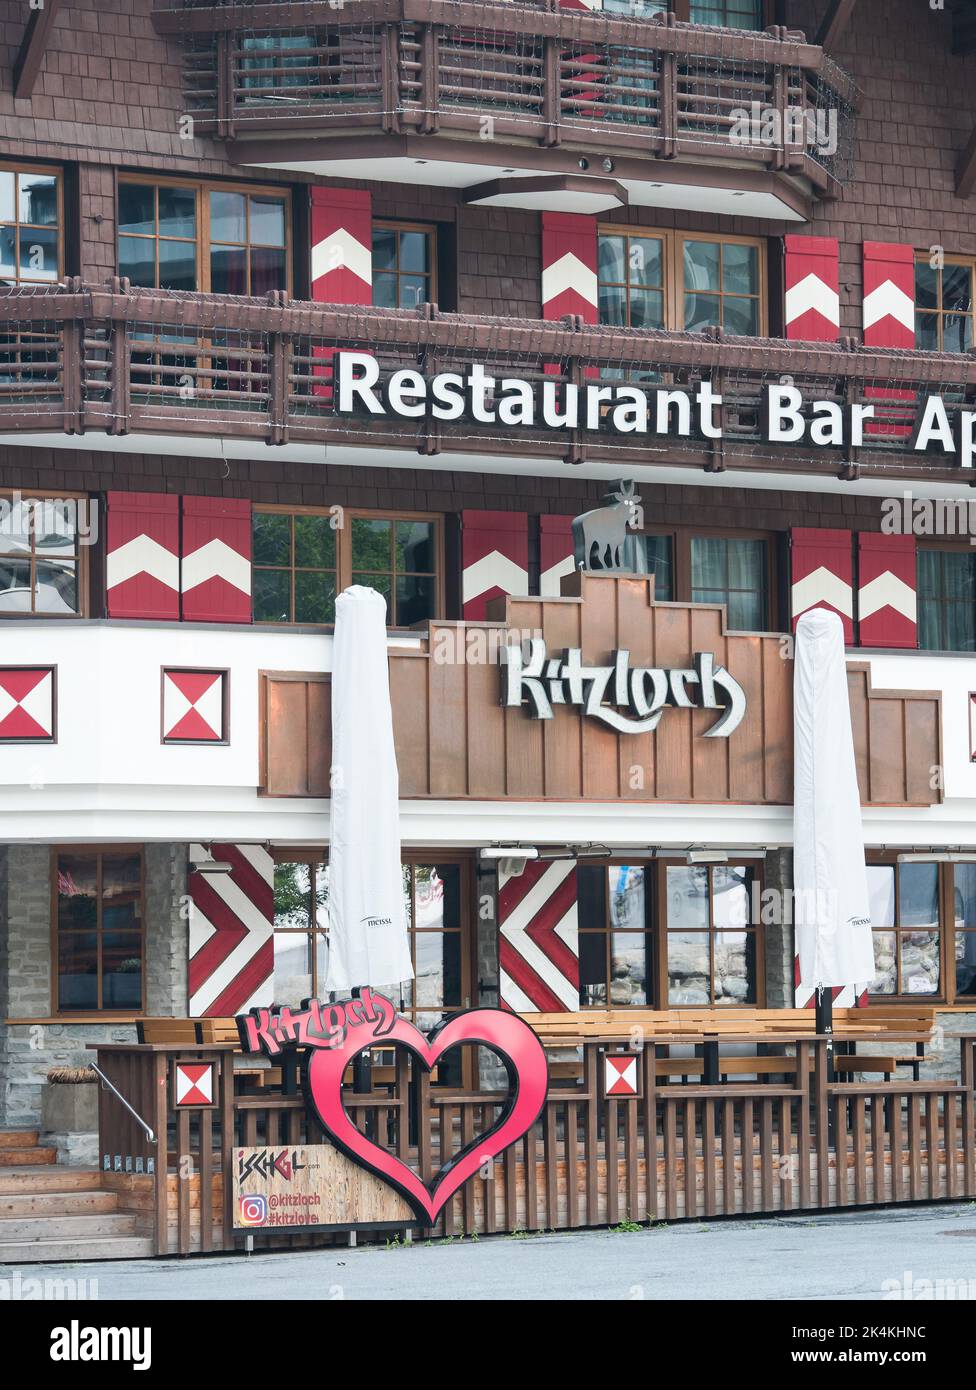 Kitzloch après-ski bar et restaurant à Ischgl, Tyrol, Autriche Banque D'Images